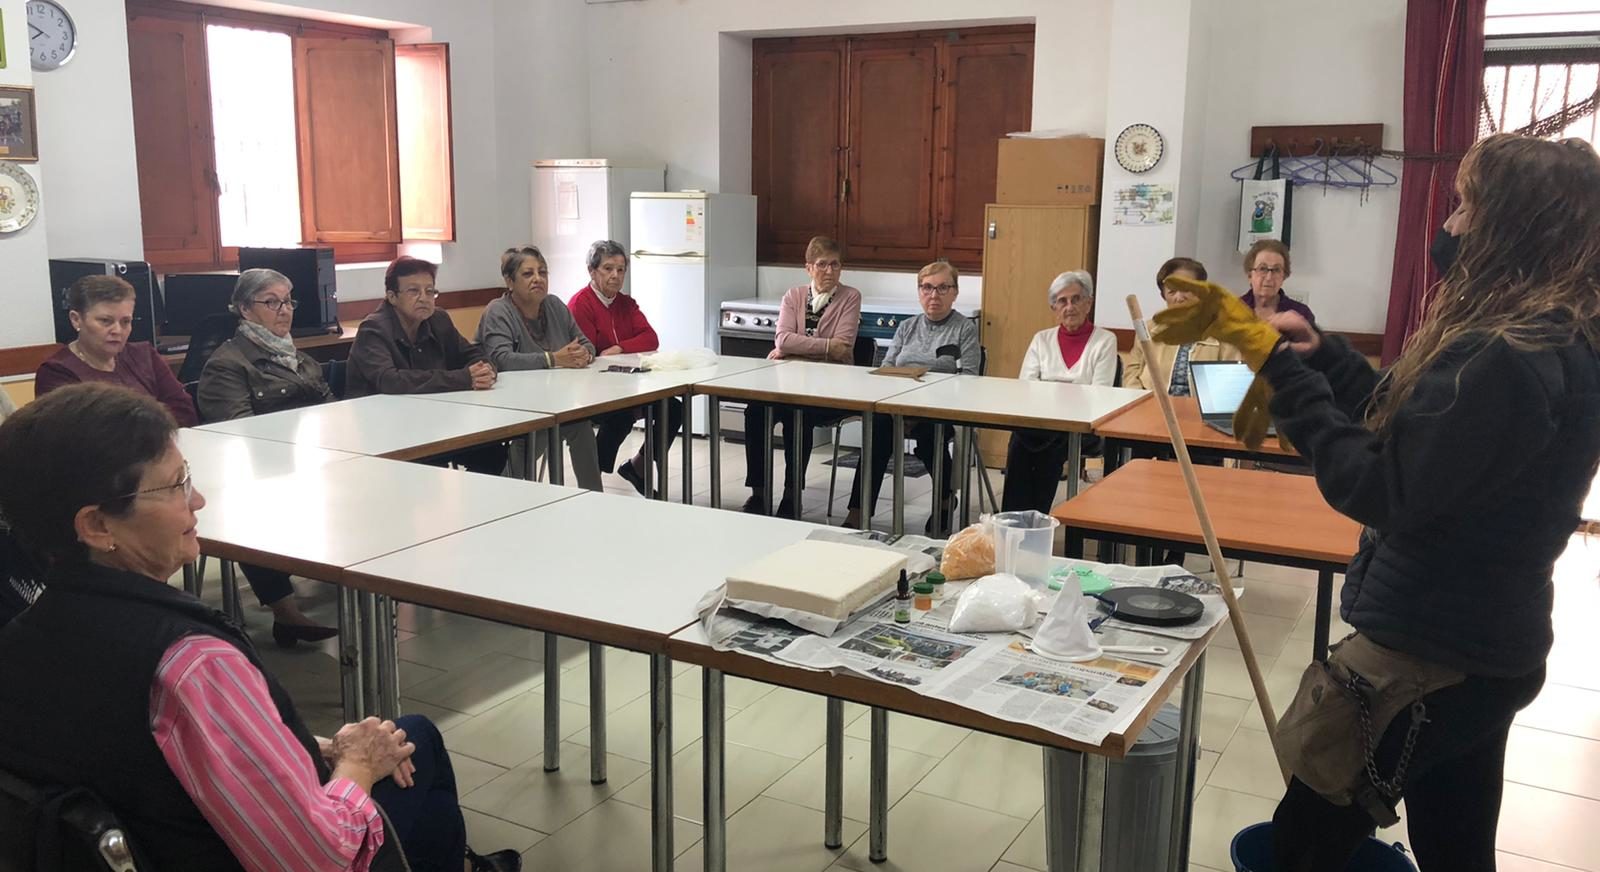 El Servei d'Educació Ambiental de la Diputació imparteix un taller d'elaboració de sabó en Santa Magdalena